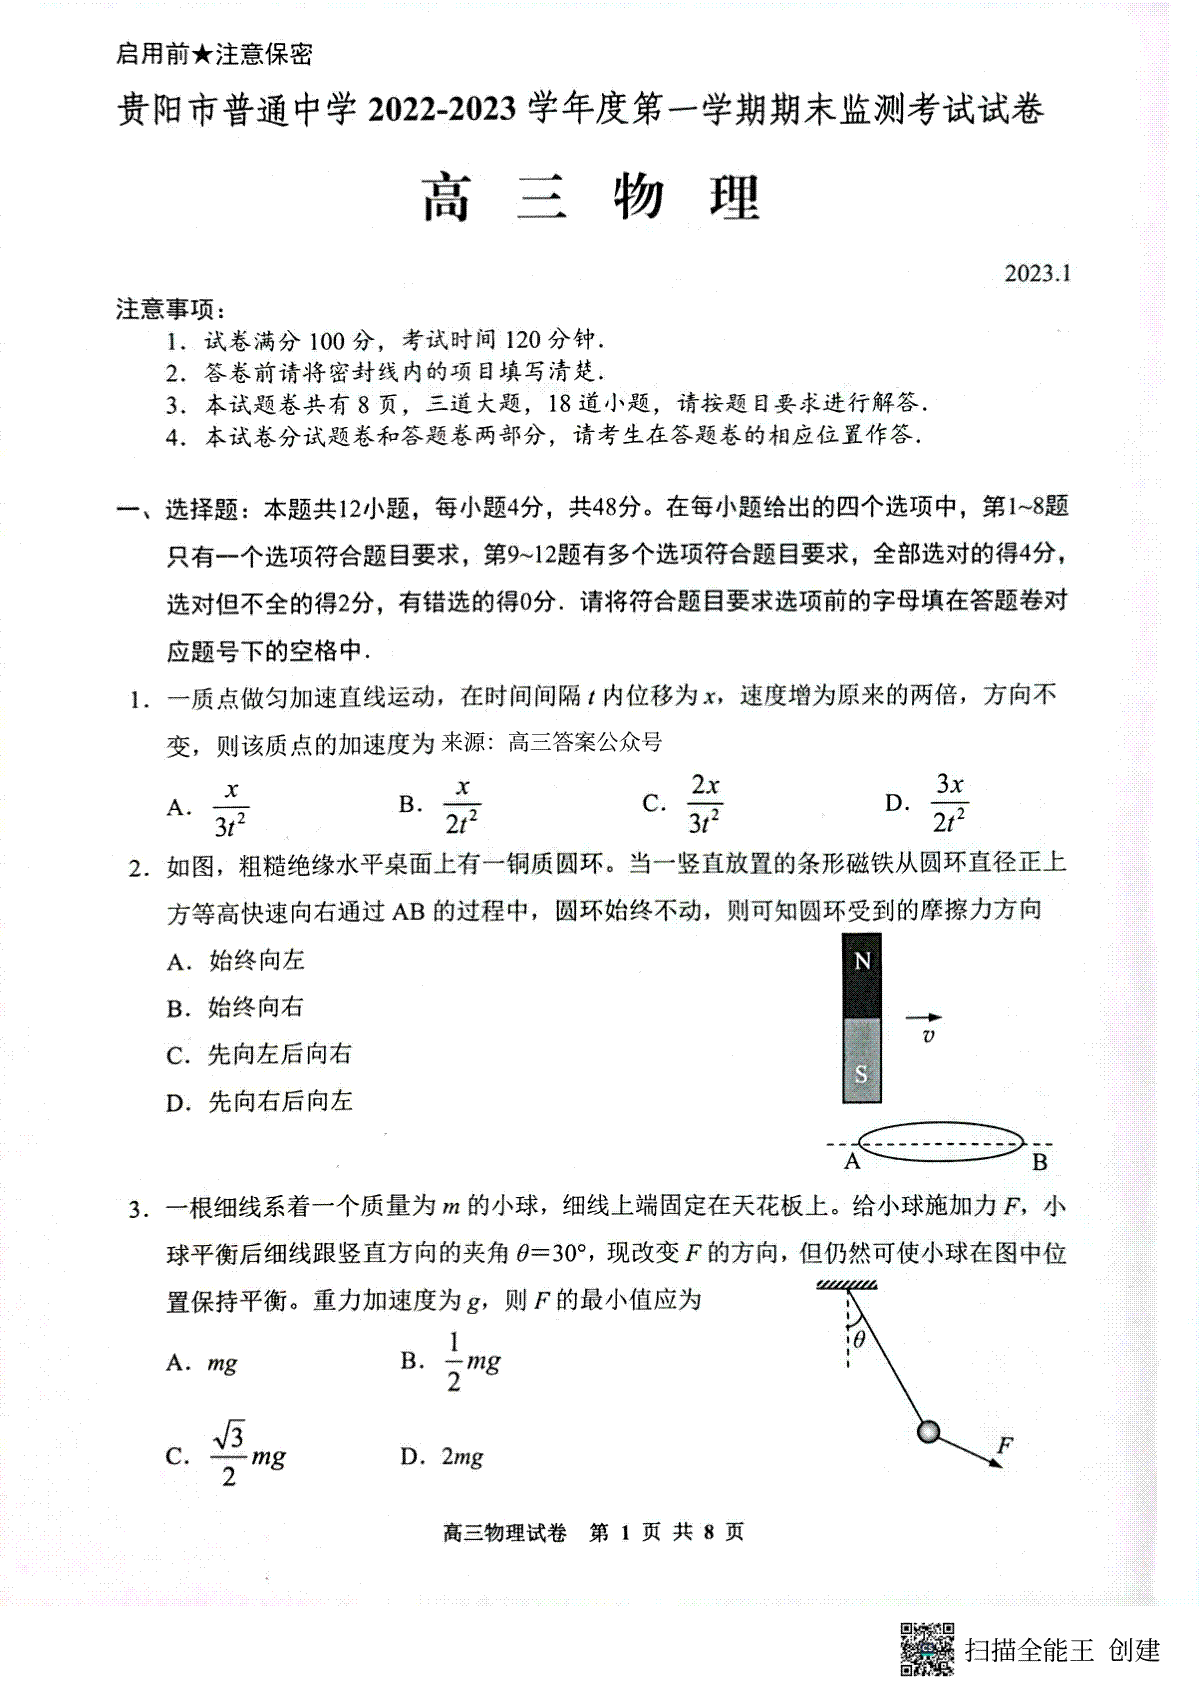 贵阳市普通中学 2022-2023 学年度第一学期期末监测考试试卷高三地物理